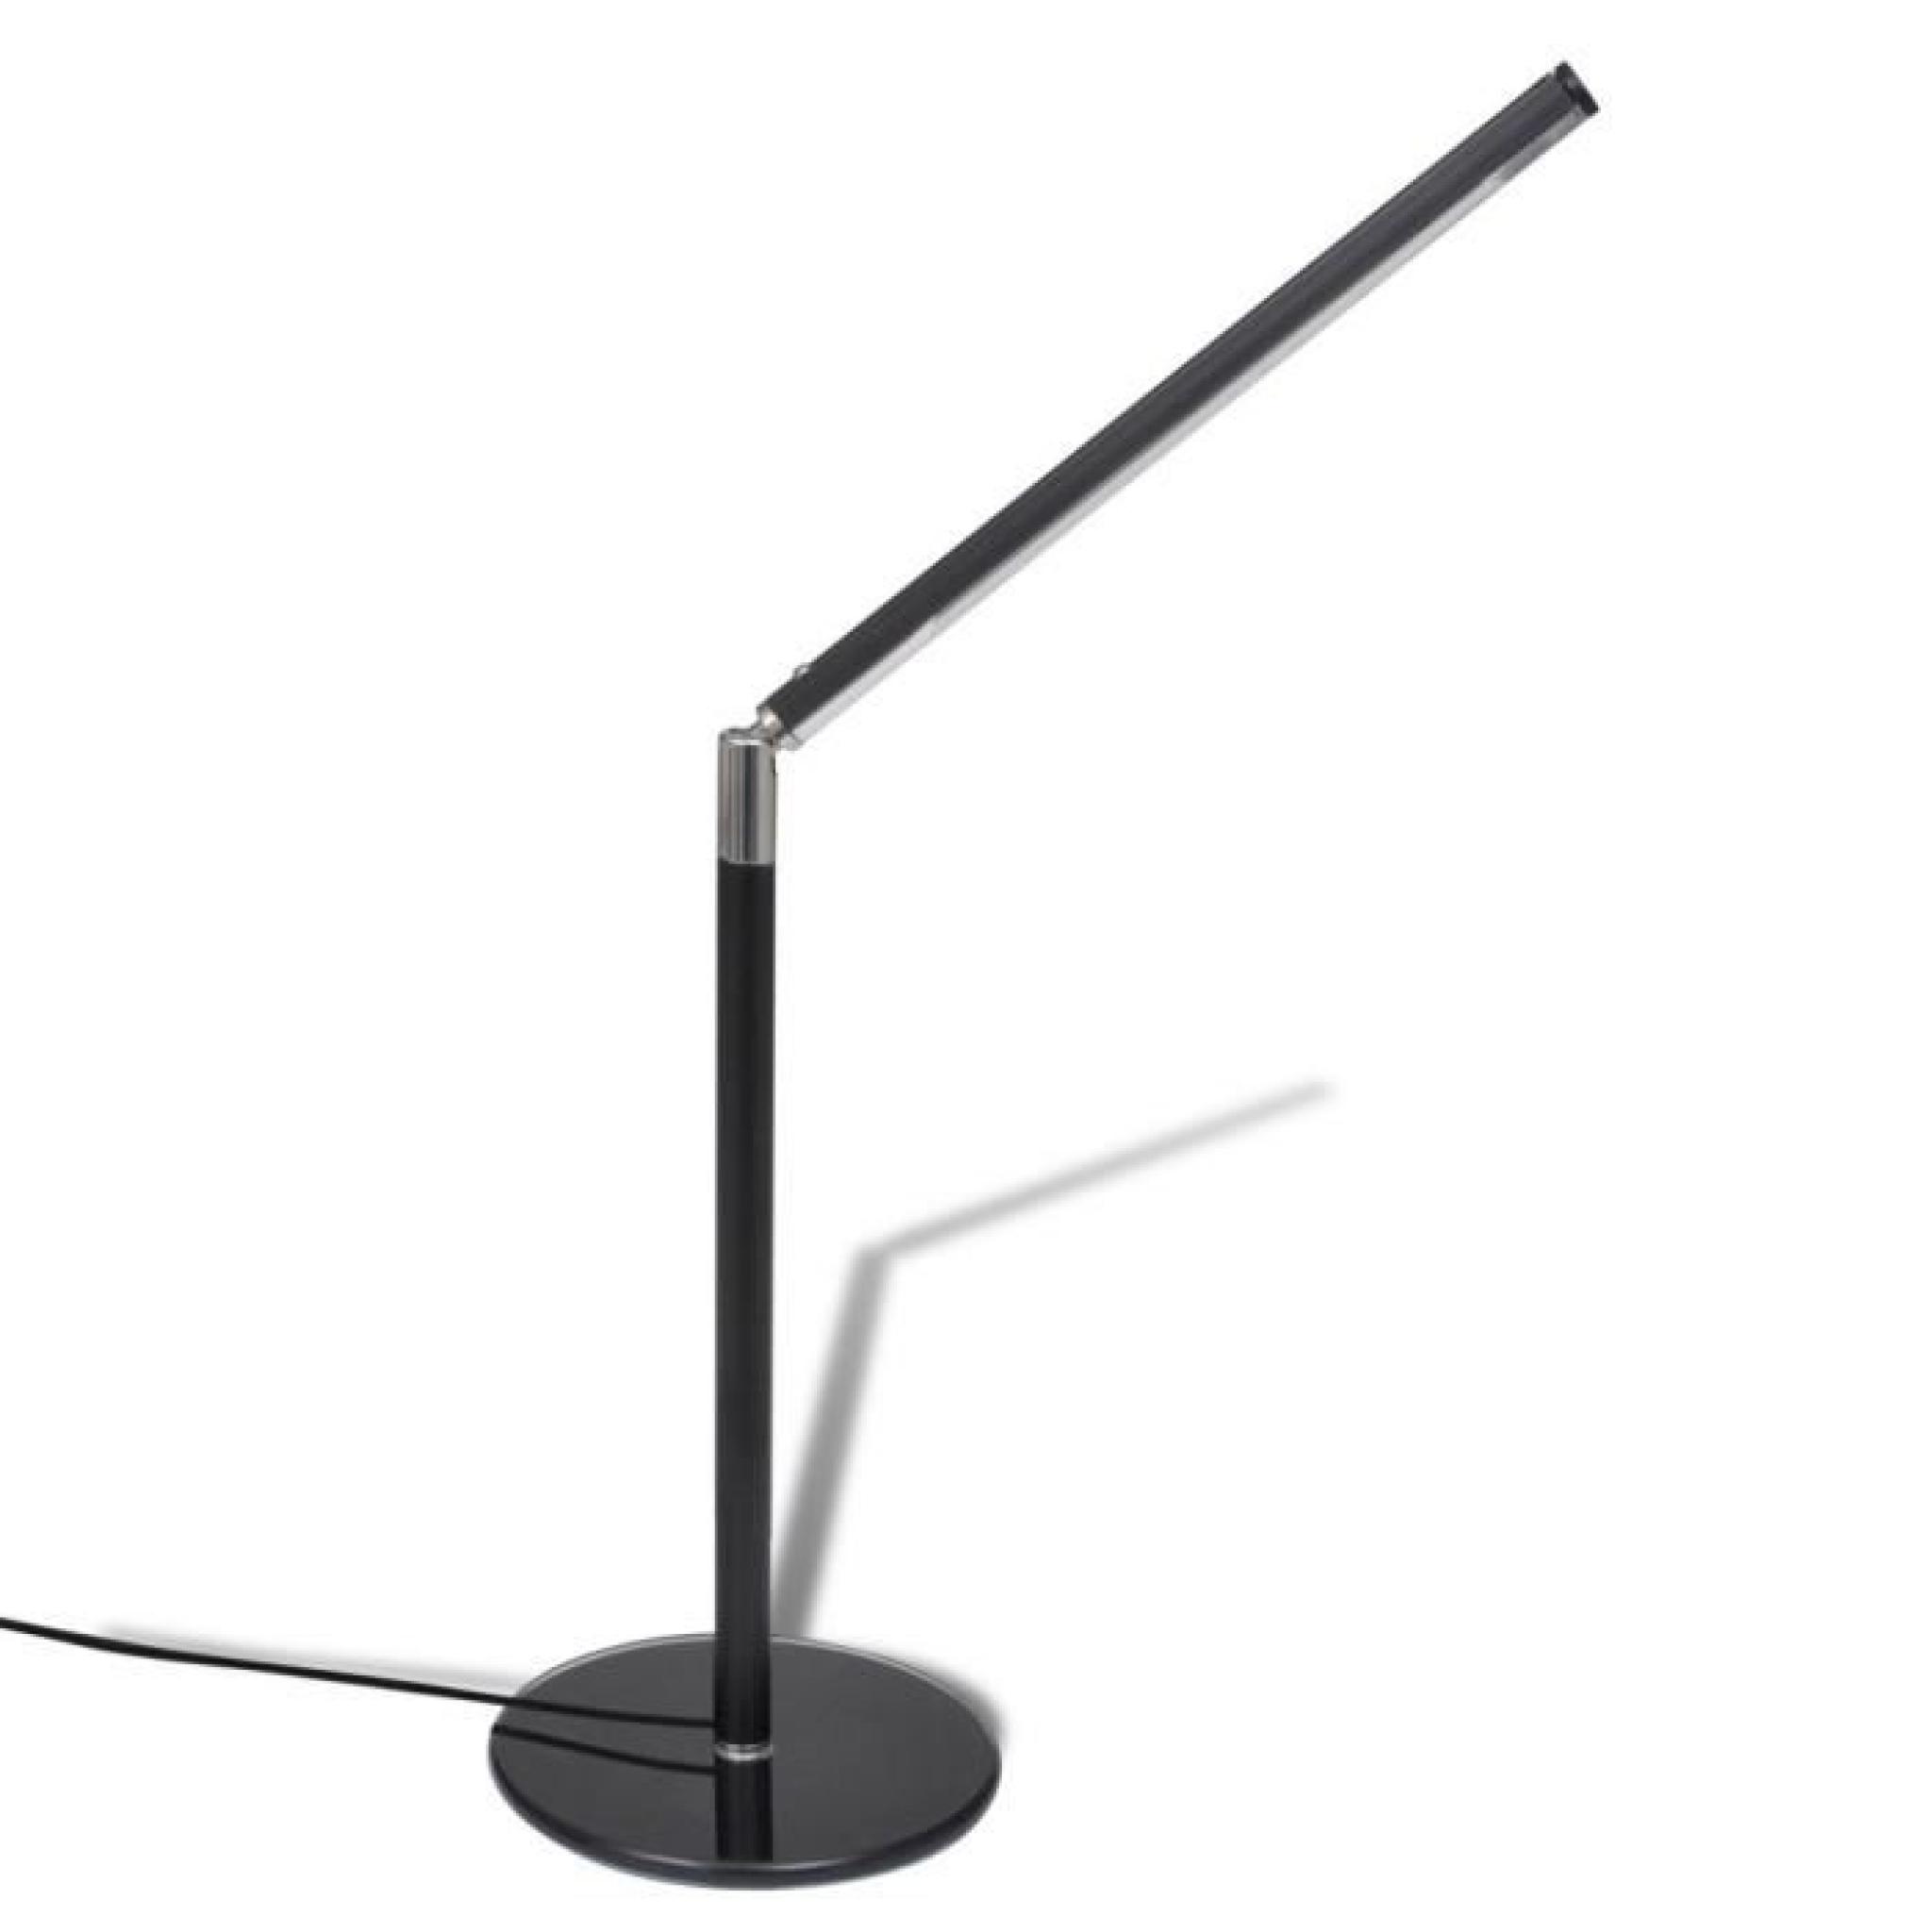 Magnifique Lampe de Table Noire LED Luminosite ajustable Blanc Froid 4W